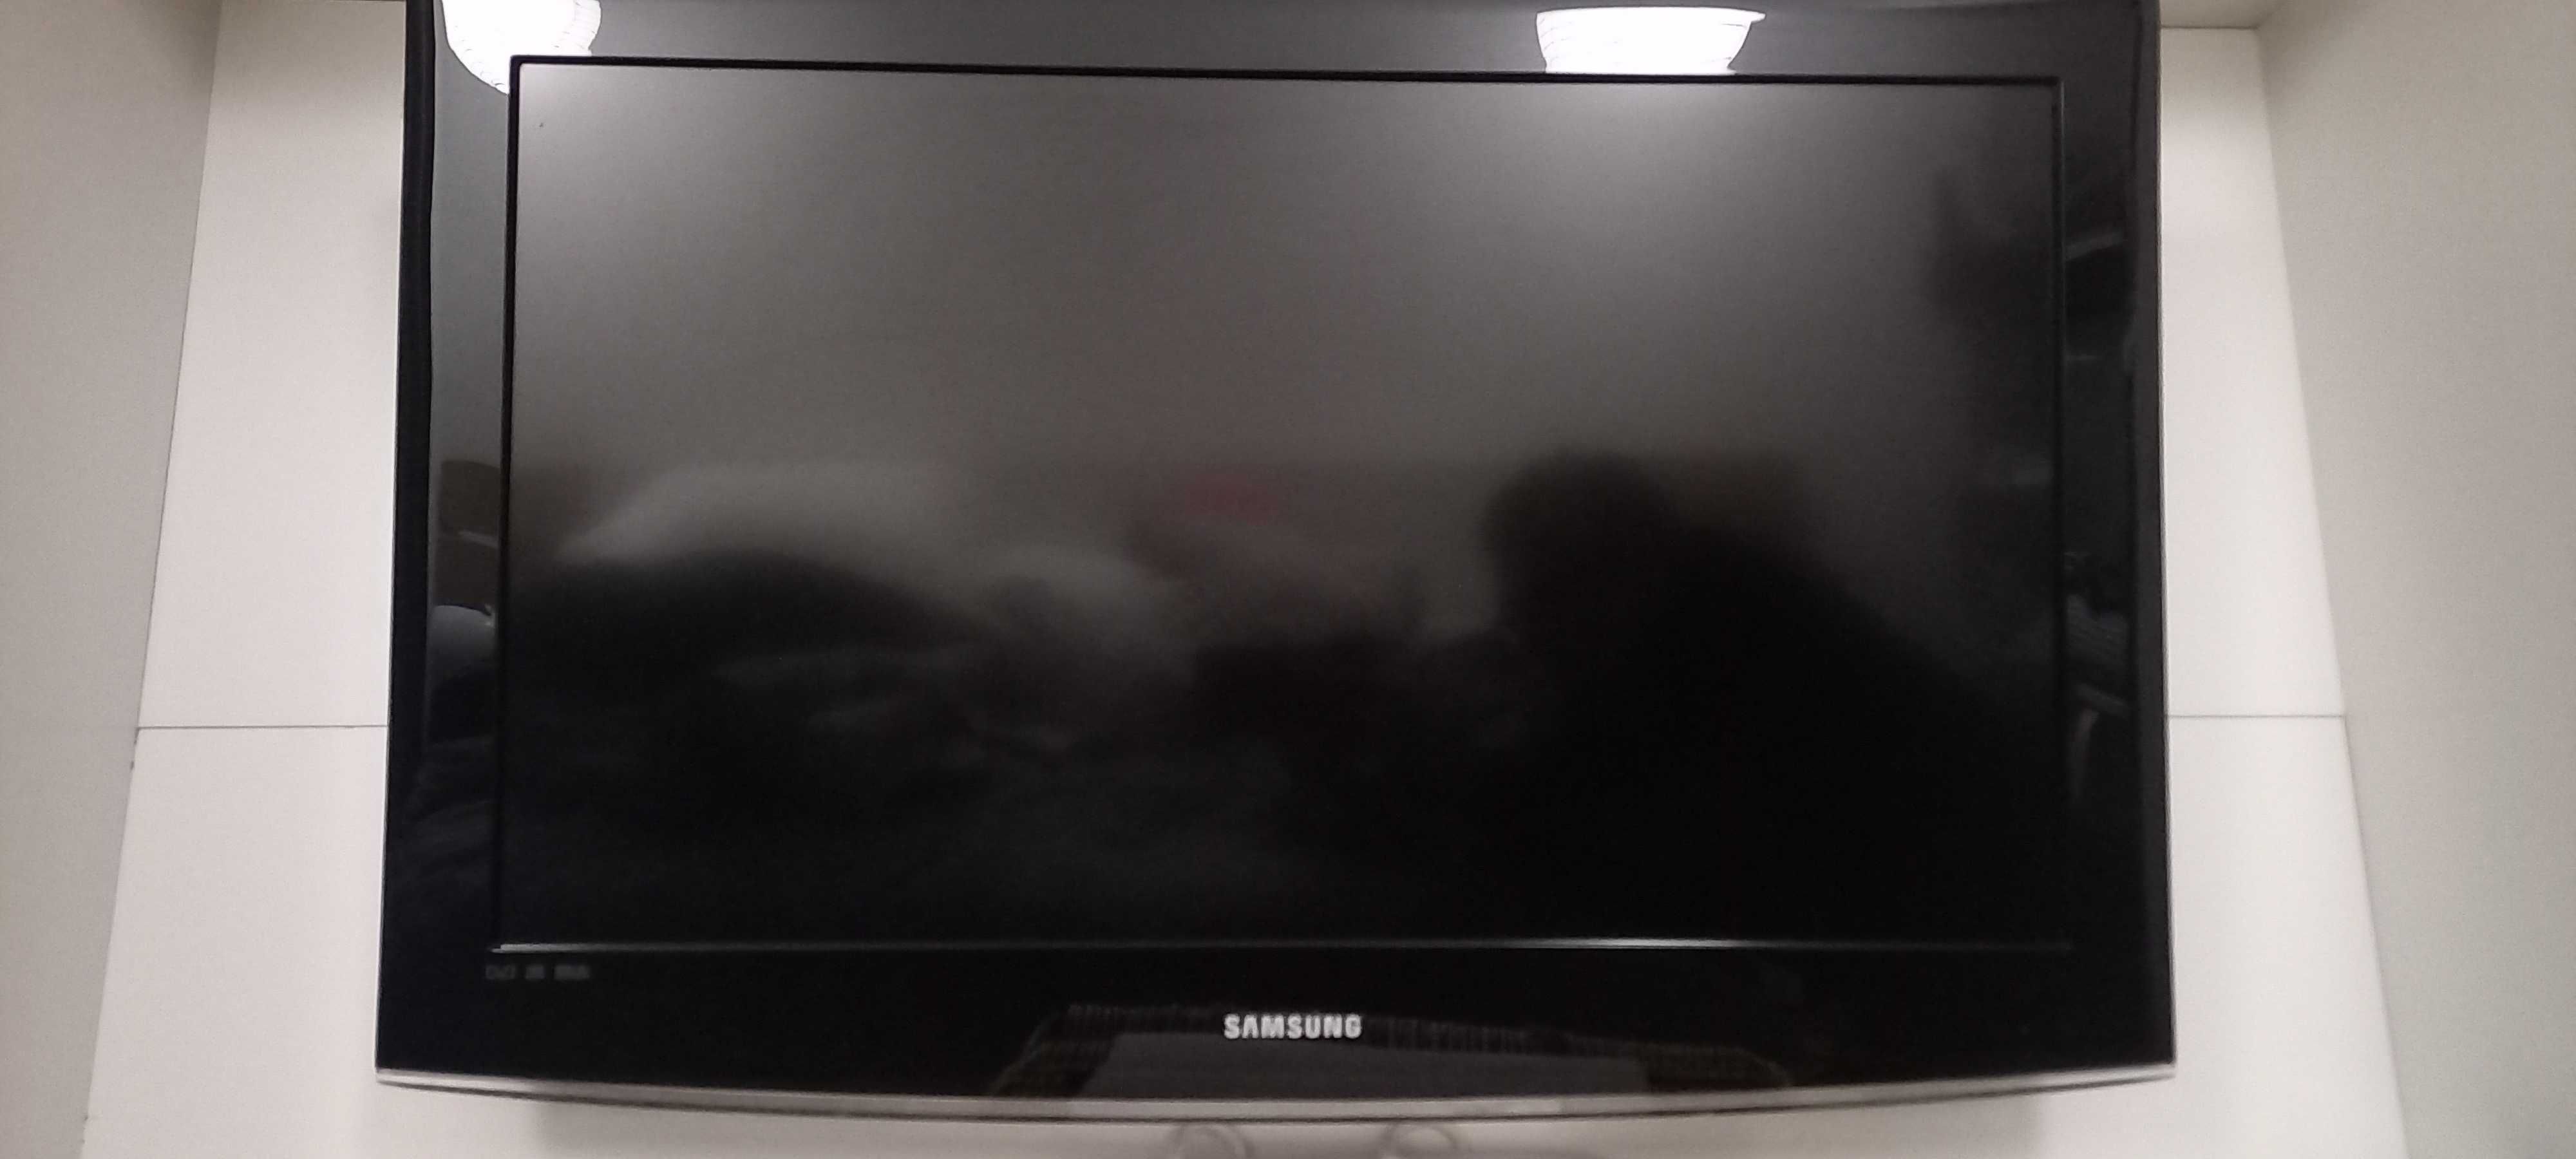 Televisão Samsung 80cm (ler bem o anúncio)